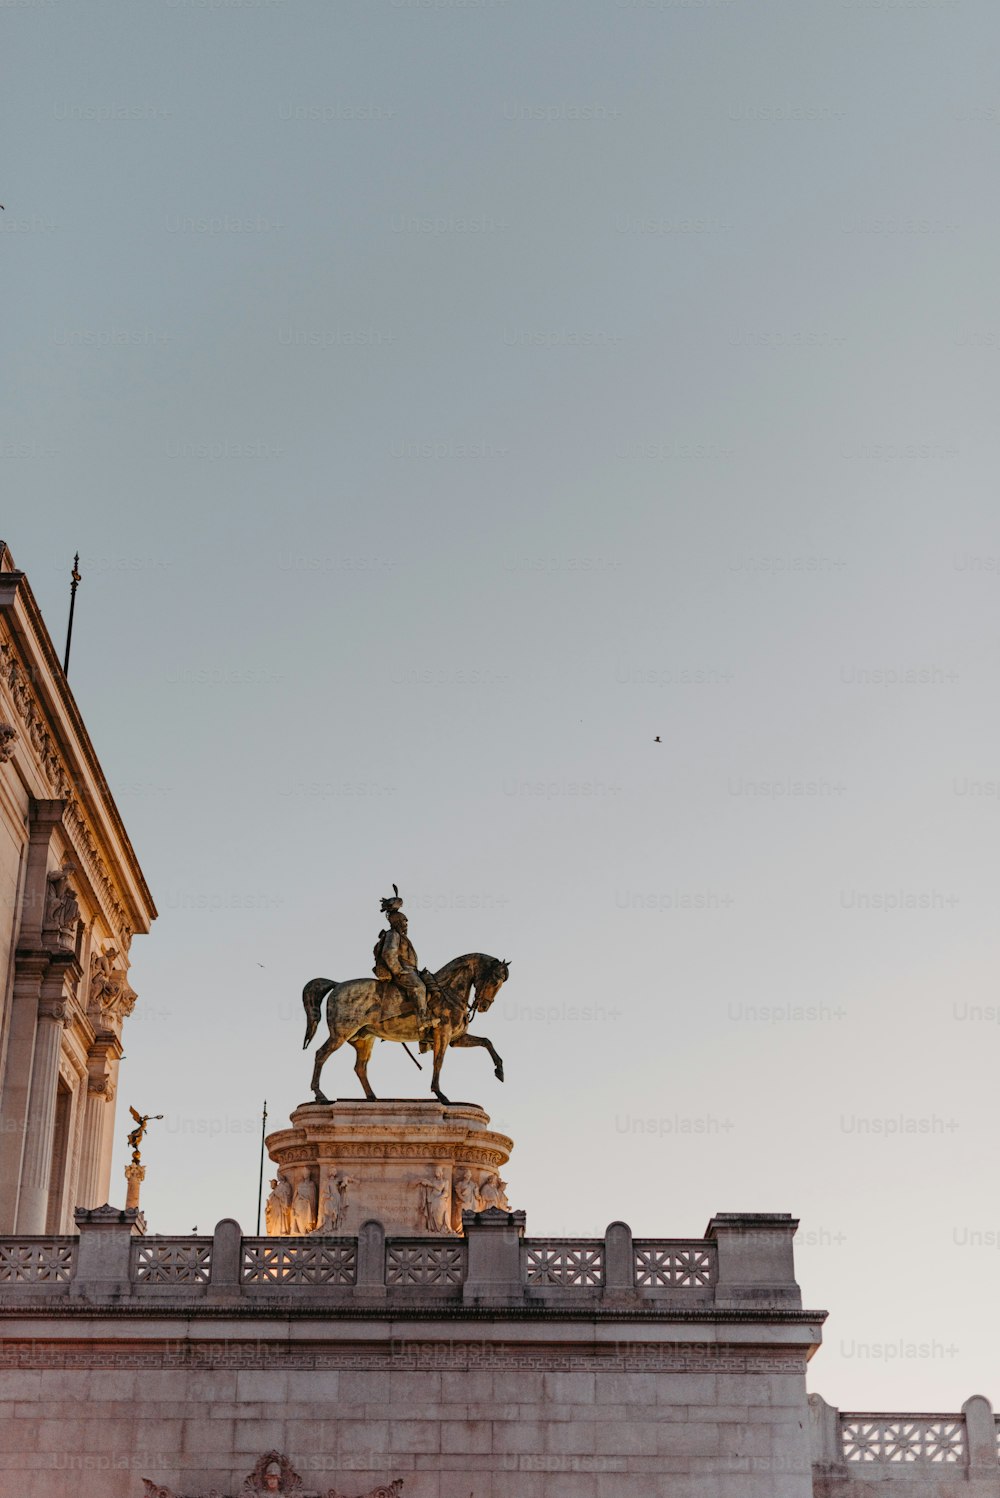 Una statua di un uomo su un cavallo in cima a un edificio